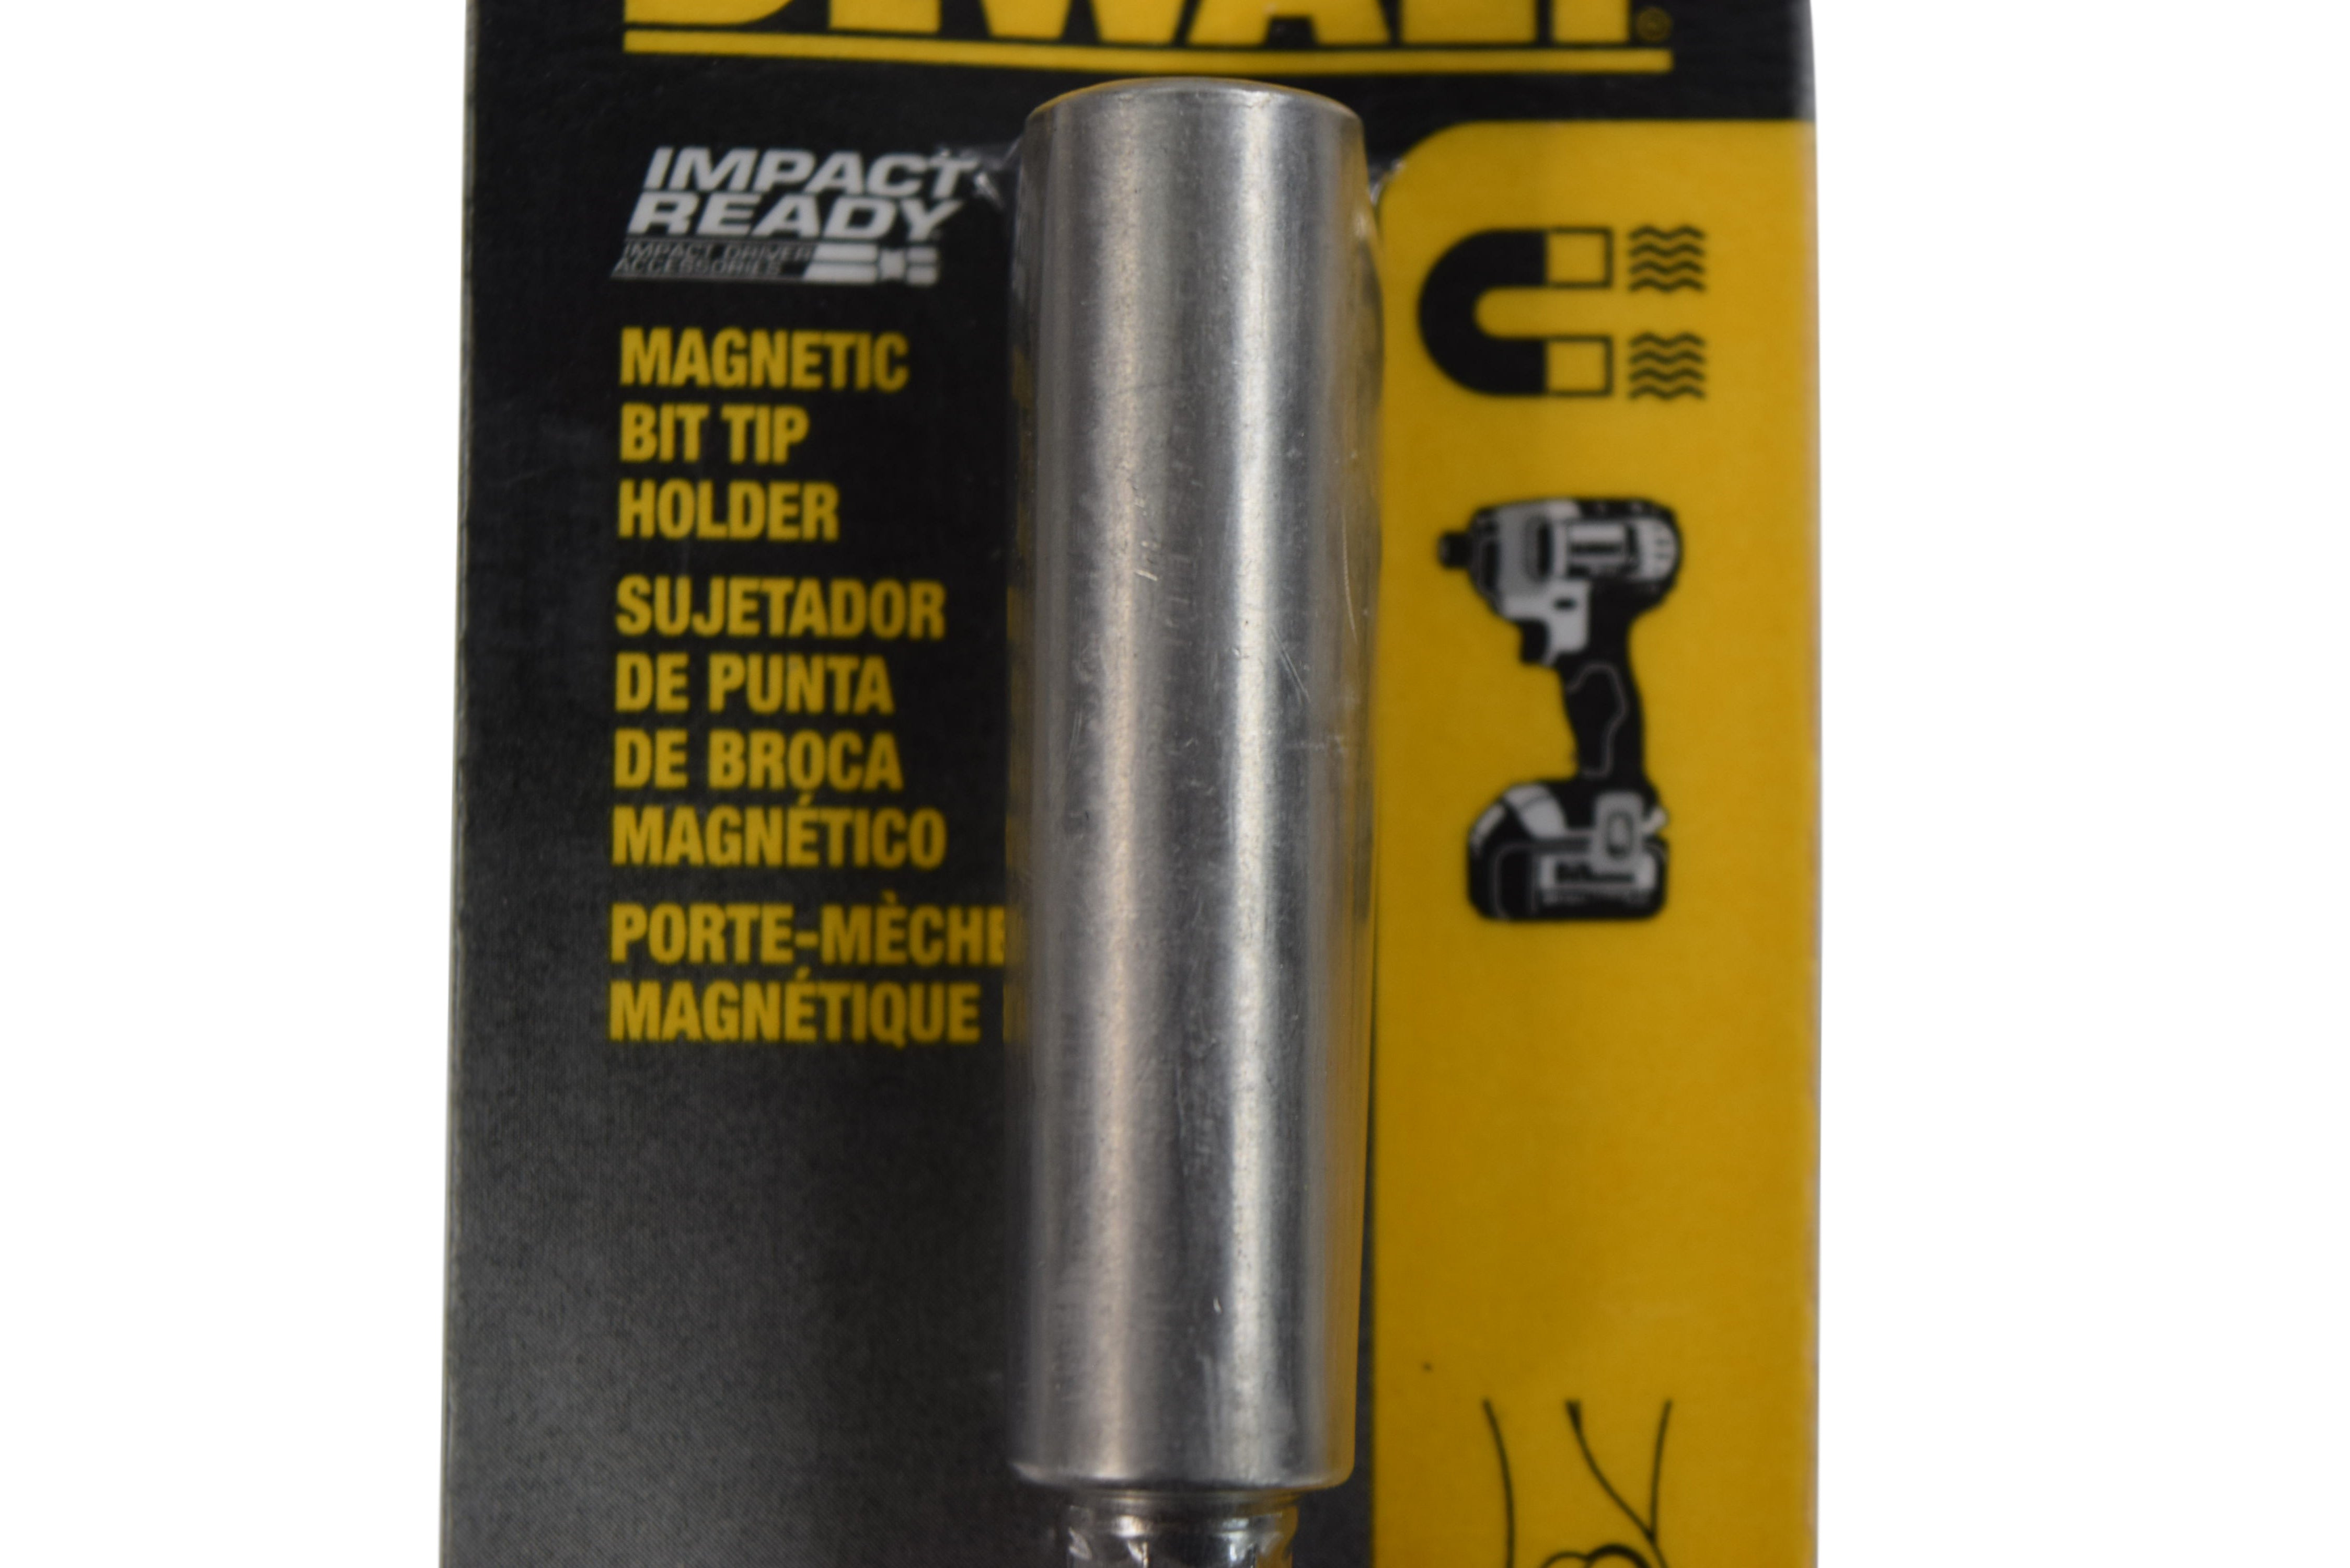 Dewalt DW2045 Metal 3-inch Screwdriving Magnetic Bit Tip Holder